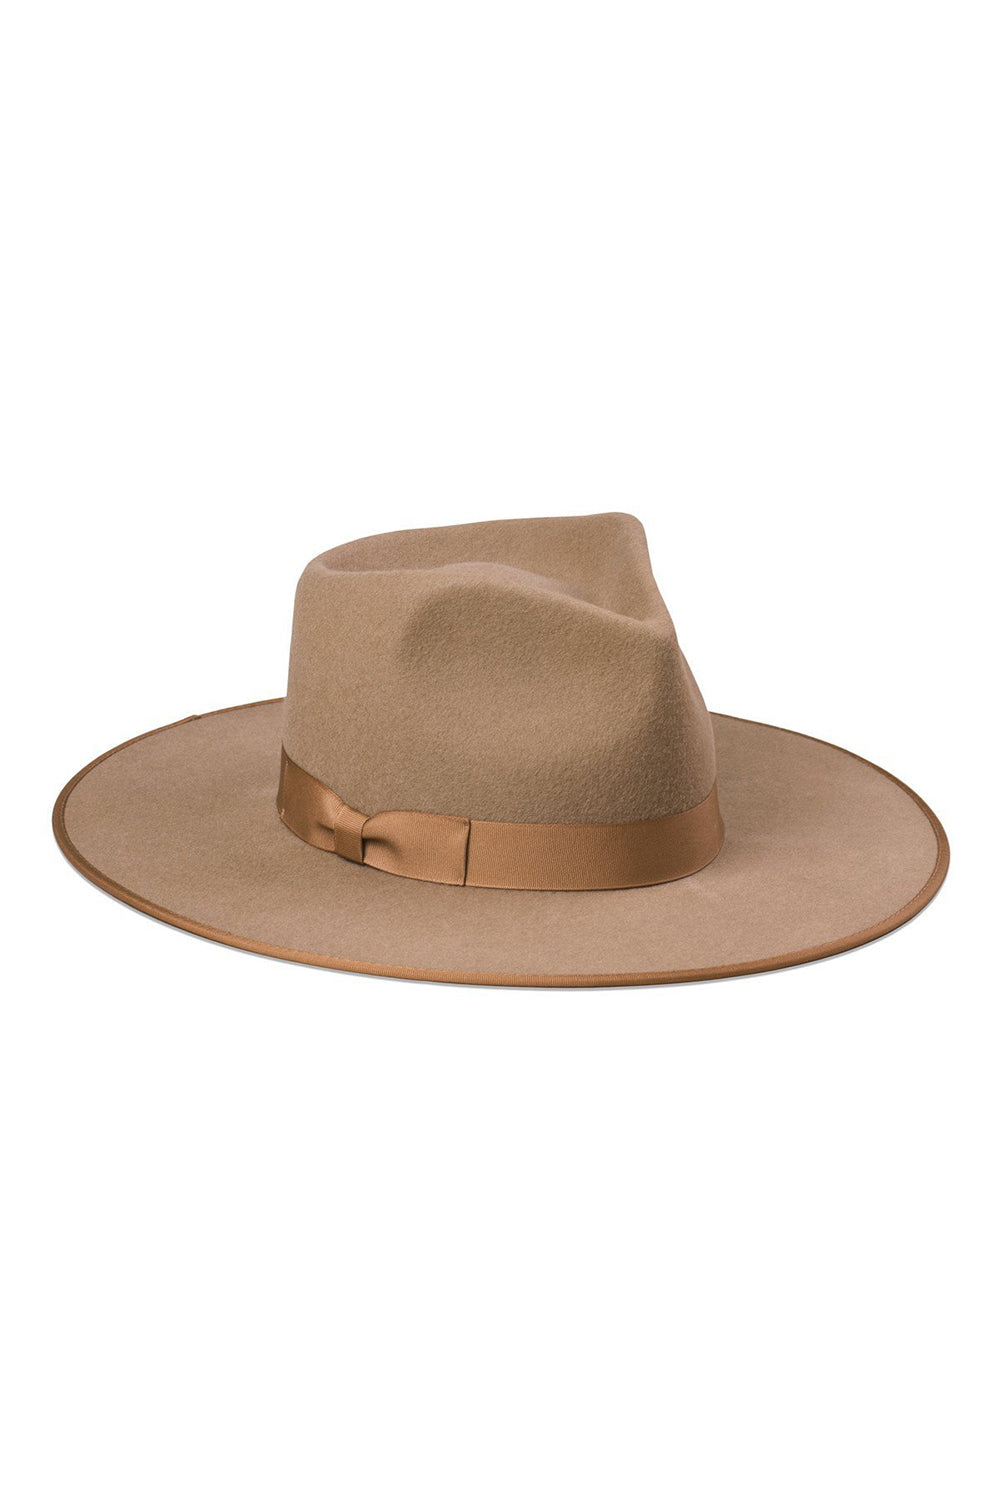 新色 ラックオブカラー coco rancher - 帽子